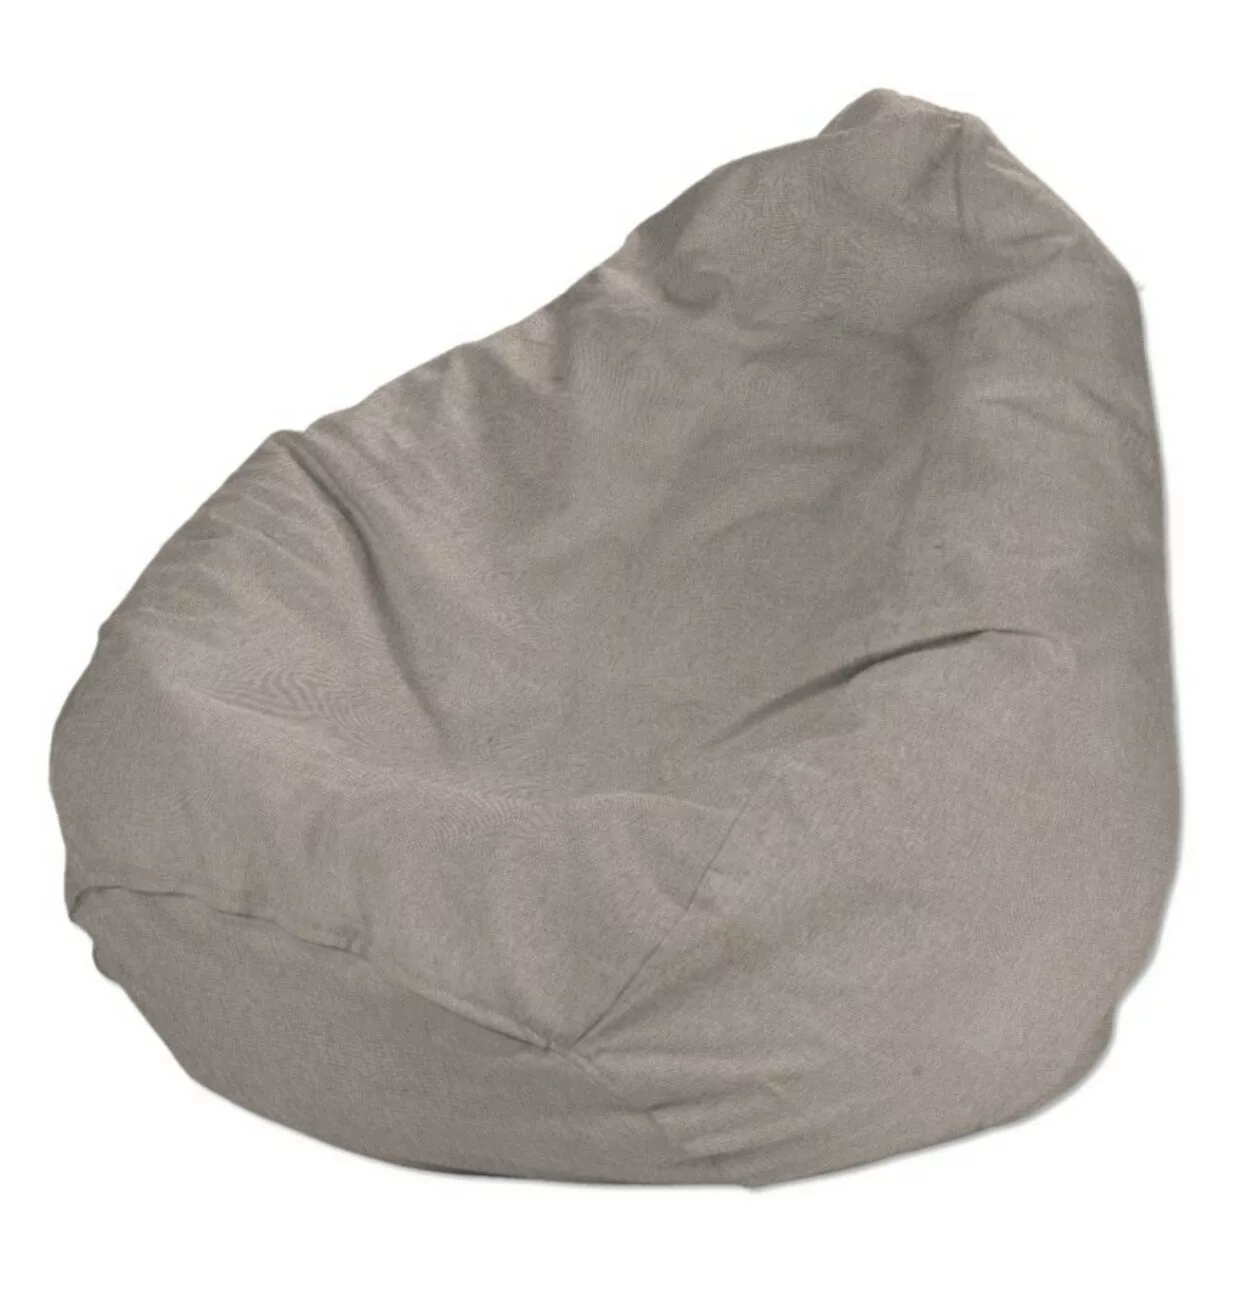 Bezug für Sitzsack, beige-grau, Bezug für Sitzsack Ø60 x 105 cm, Etna (705- günstig online kaufen